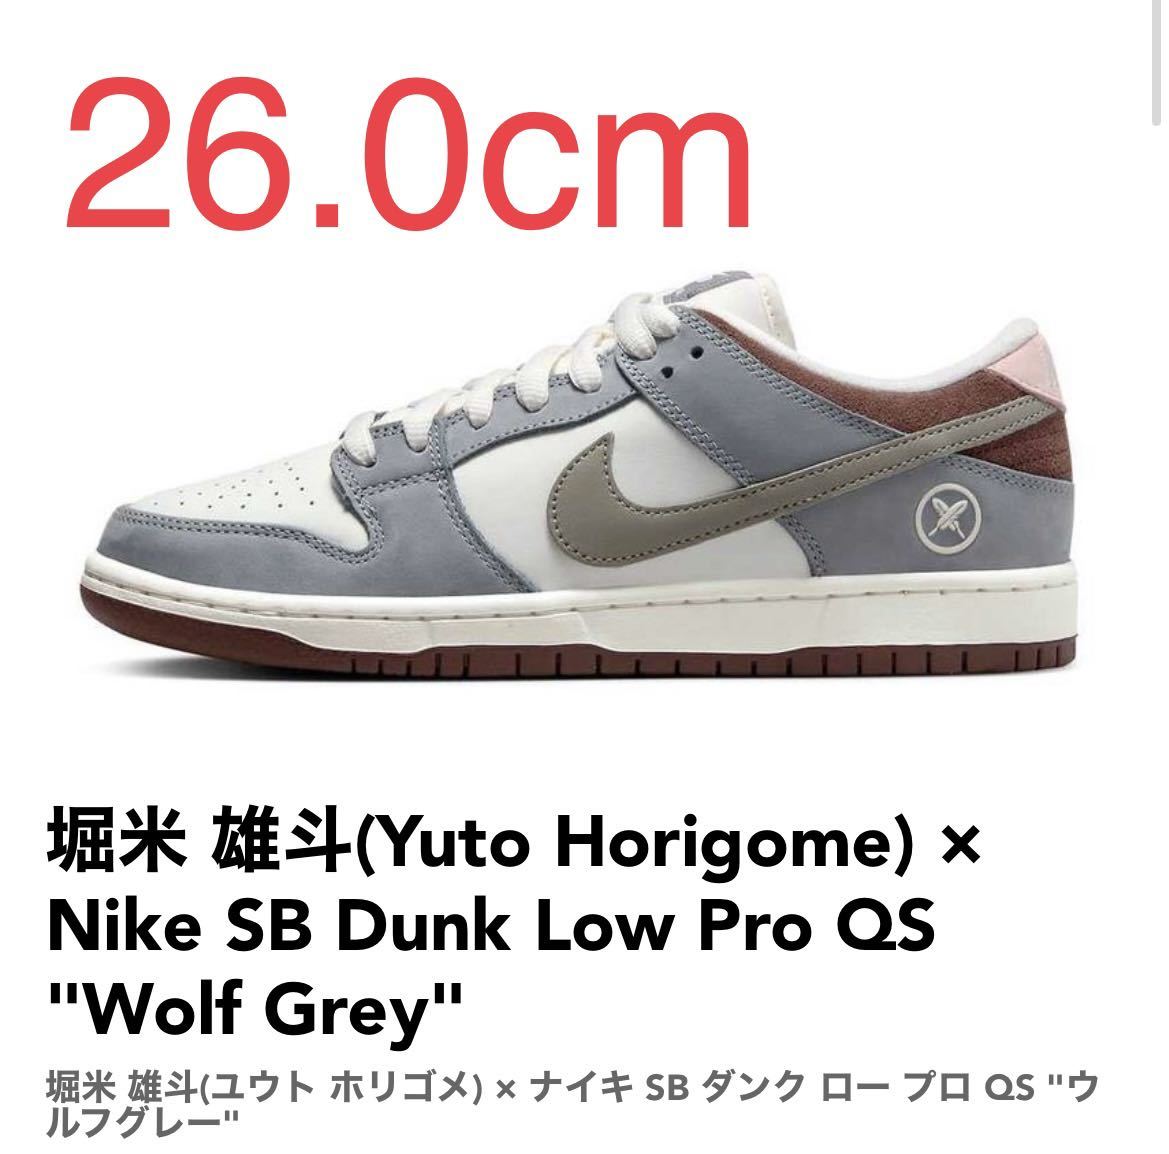 堀米雄斗(Yuto Horigome) × Nike SB Dunk Low Pro QS Wolf Grey ナイキ